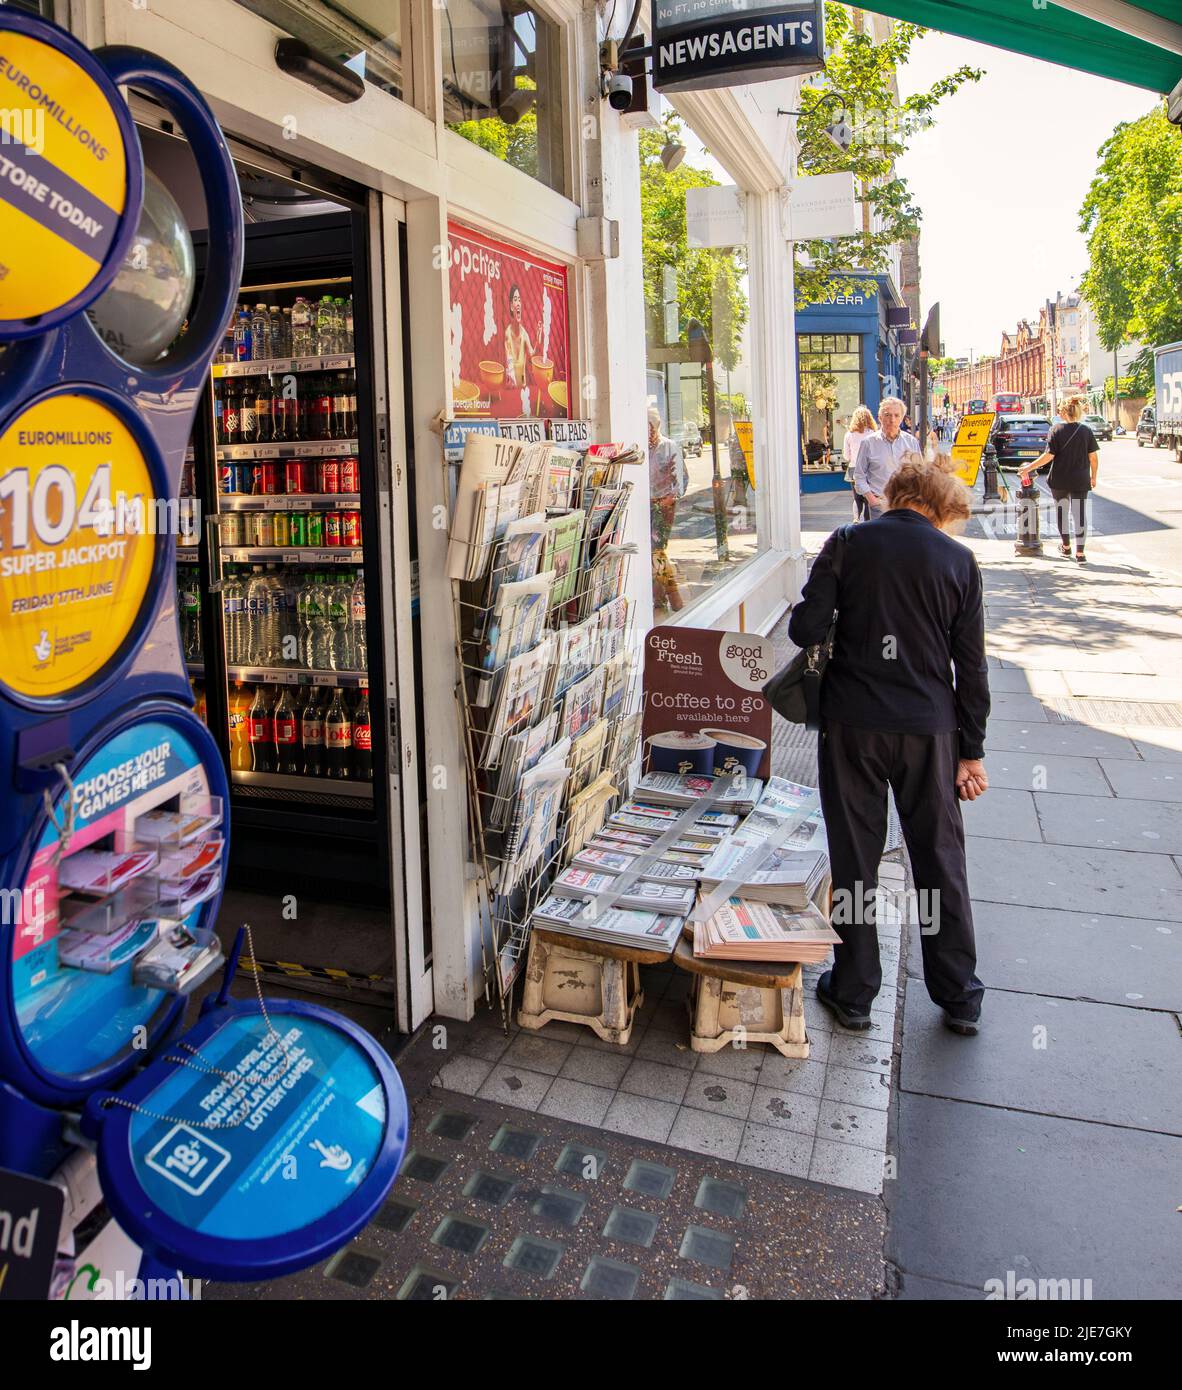 Quiosco de prensa en King's Road, Londres, Reino Unido; una calle de tiendas de moda que se encuentra a 2 km de Fulham a Sloane Square Foto de stock